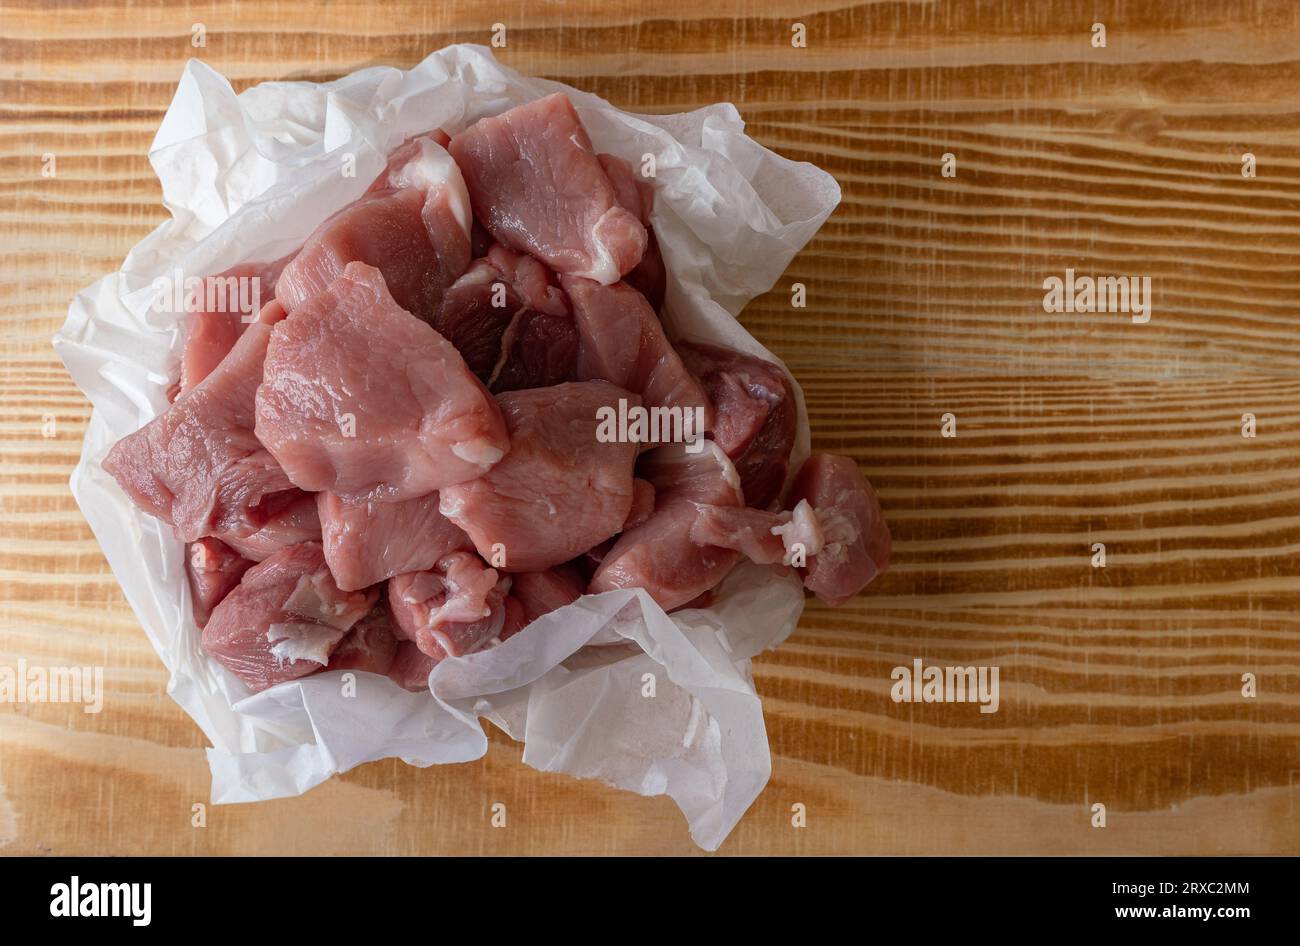 Cuisse de porc coupée en dés emballée dans du papier blanc sur une table en bois. Banque D'Images